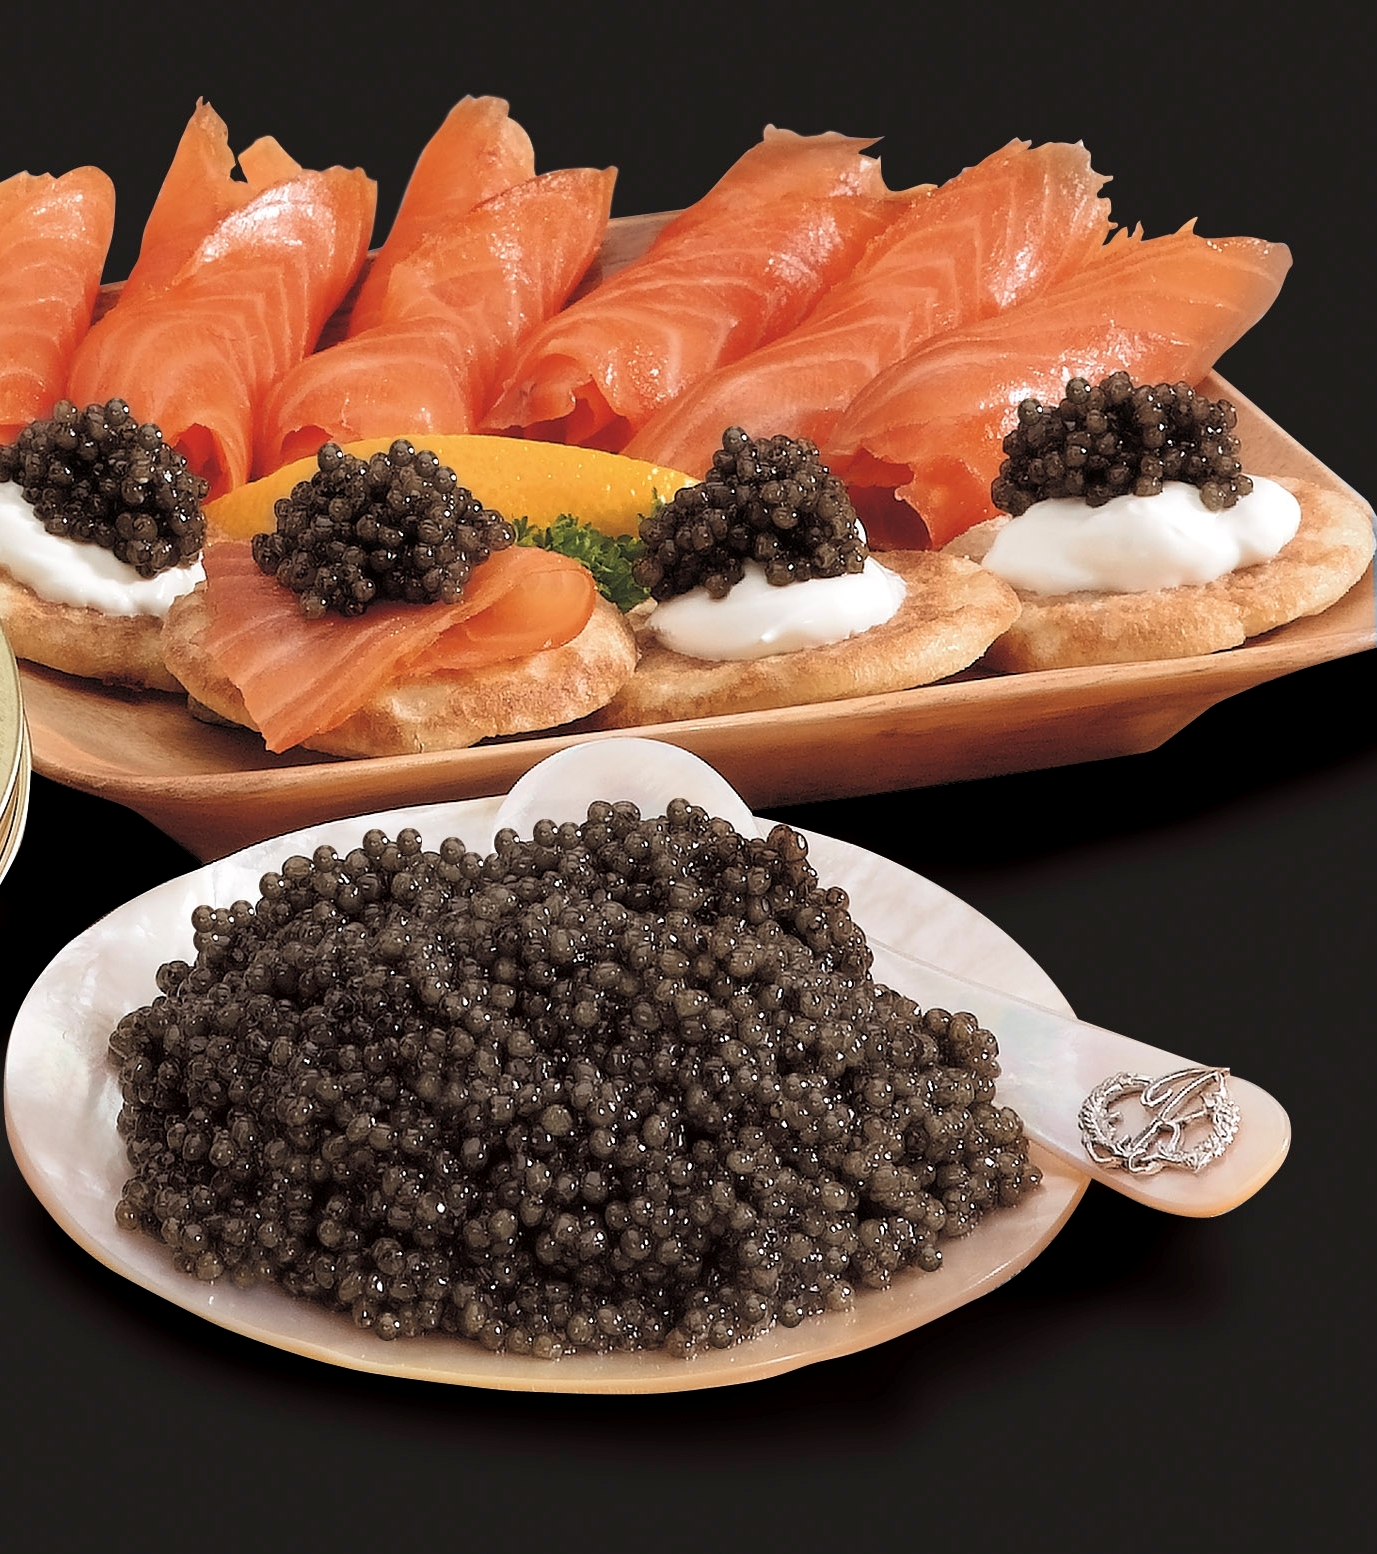 Le caviar, c'est juste des oeufs de poisson